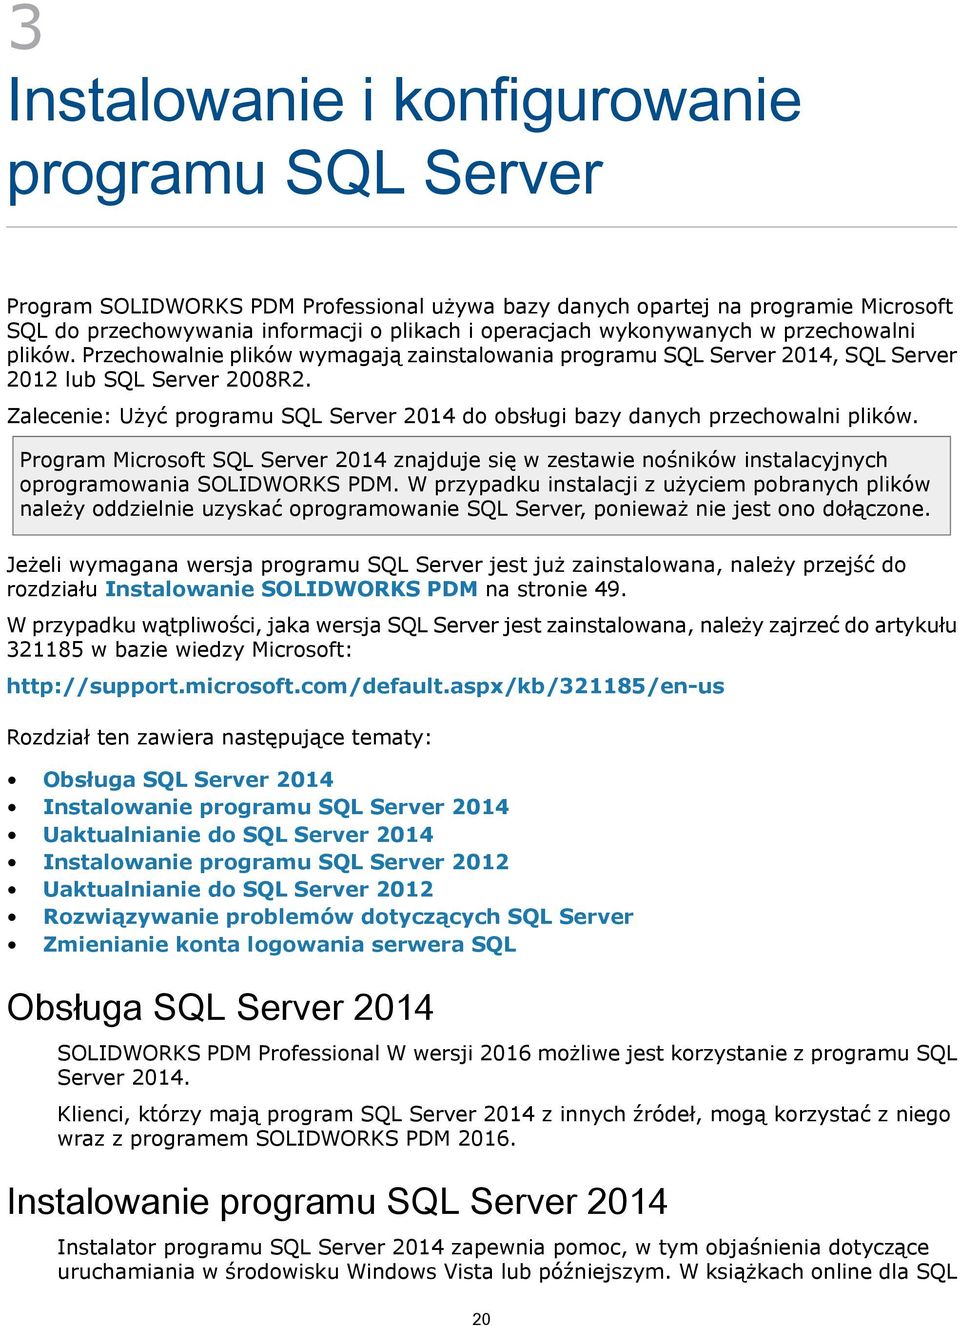 Zalecenie: Użyć programu SQL Server 2014 do obsługi bazy danych przechowalni plików. Program Microsoft SQL Server 2014 znajduje się w zestawie nośników instalacyjnych oprogramowania SOLIDWORKS PDM.